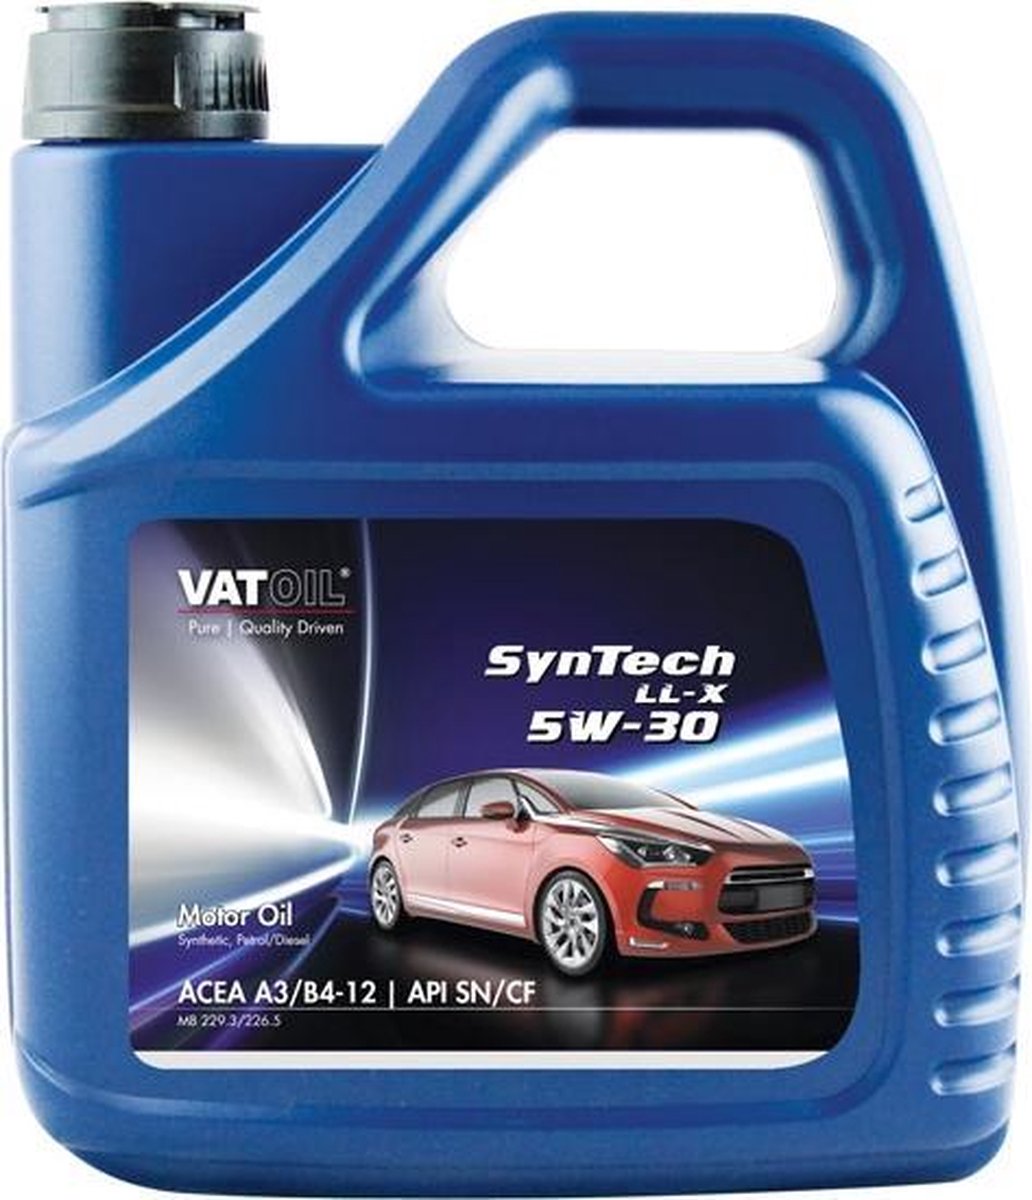 VatOil SynTech LL-X 5W-30 4 Liter